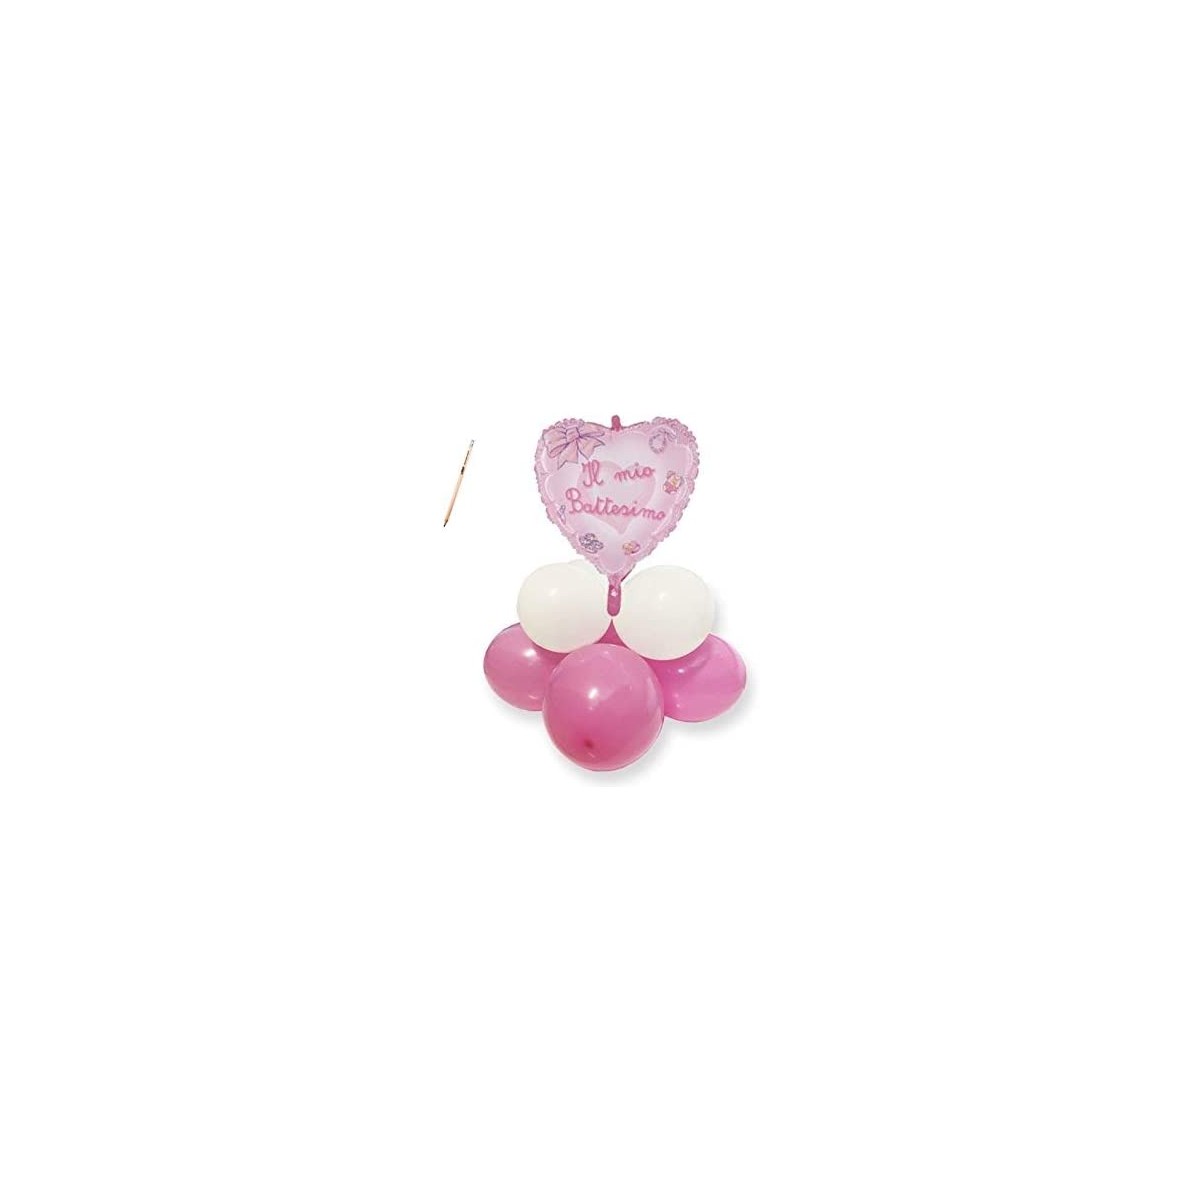 Composizione palloncini Fiocco cuore Battesimo rosa, per feste